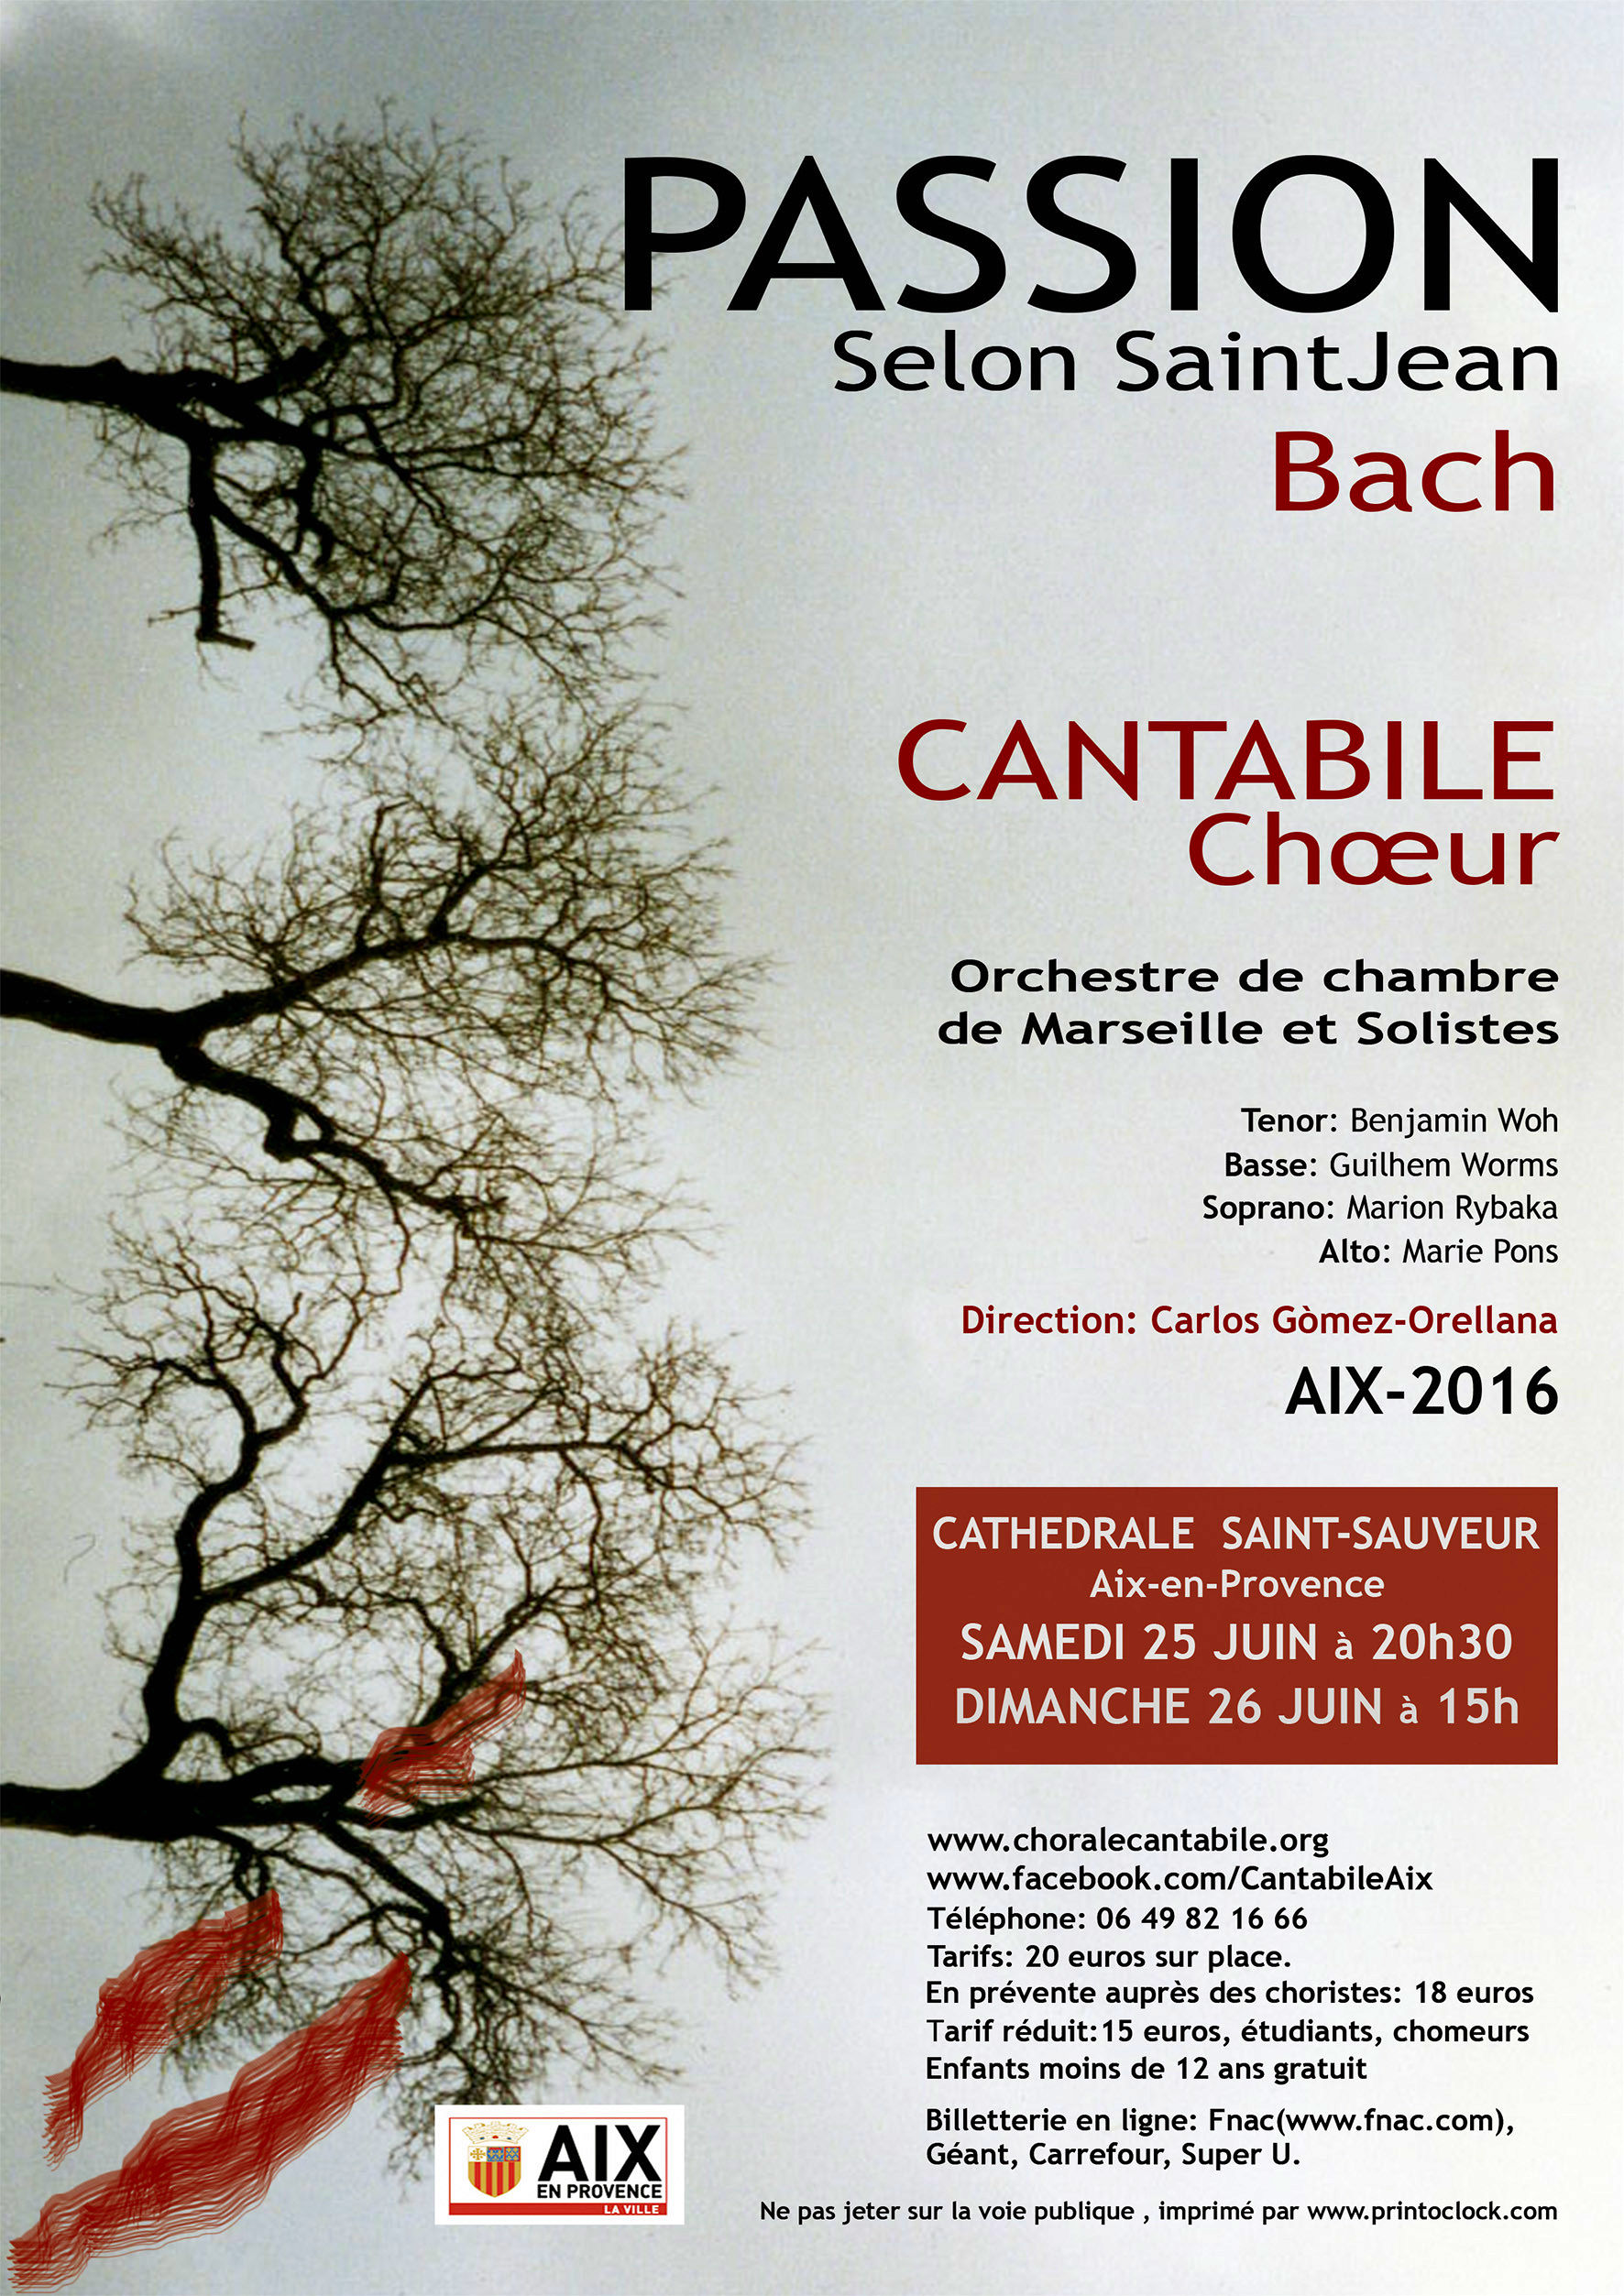 Affiche des concerts cantabilé pour la passion selon Saint Jean de Bach.